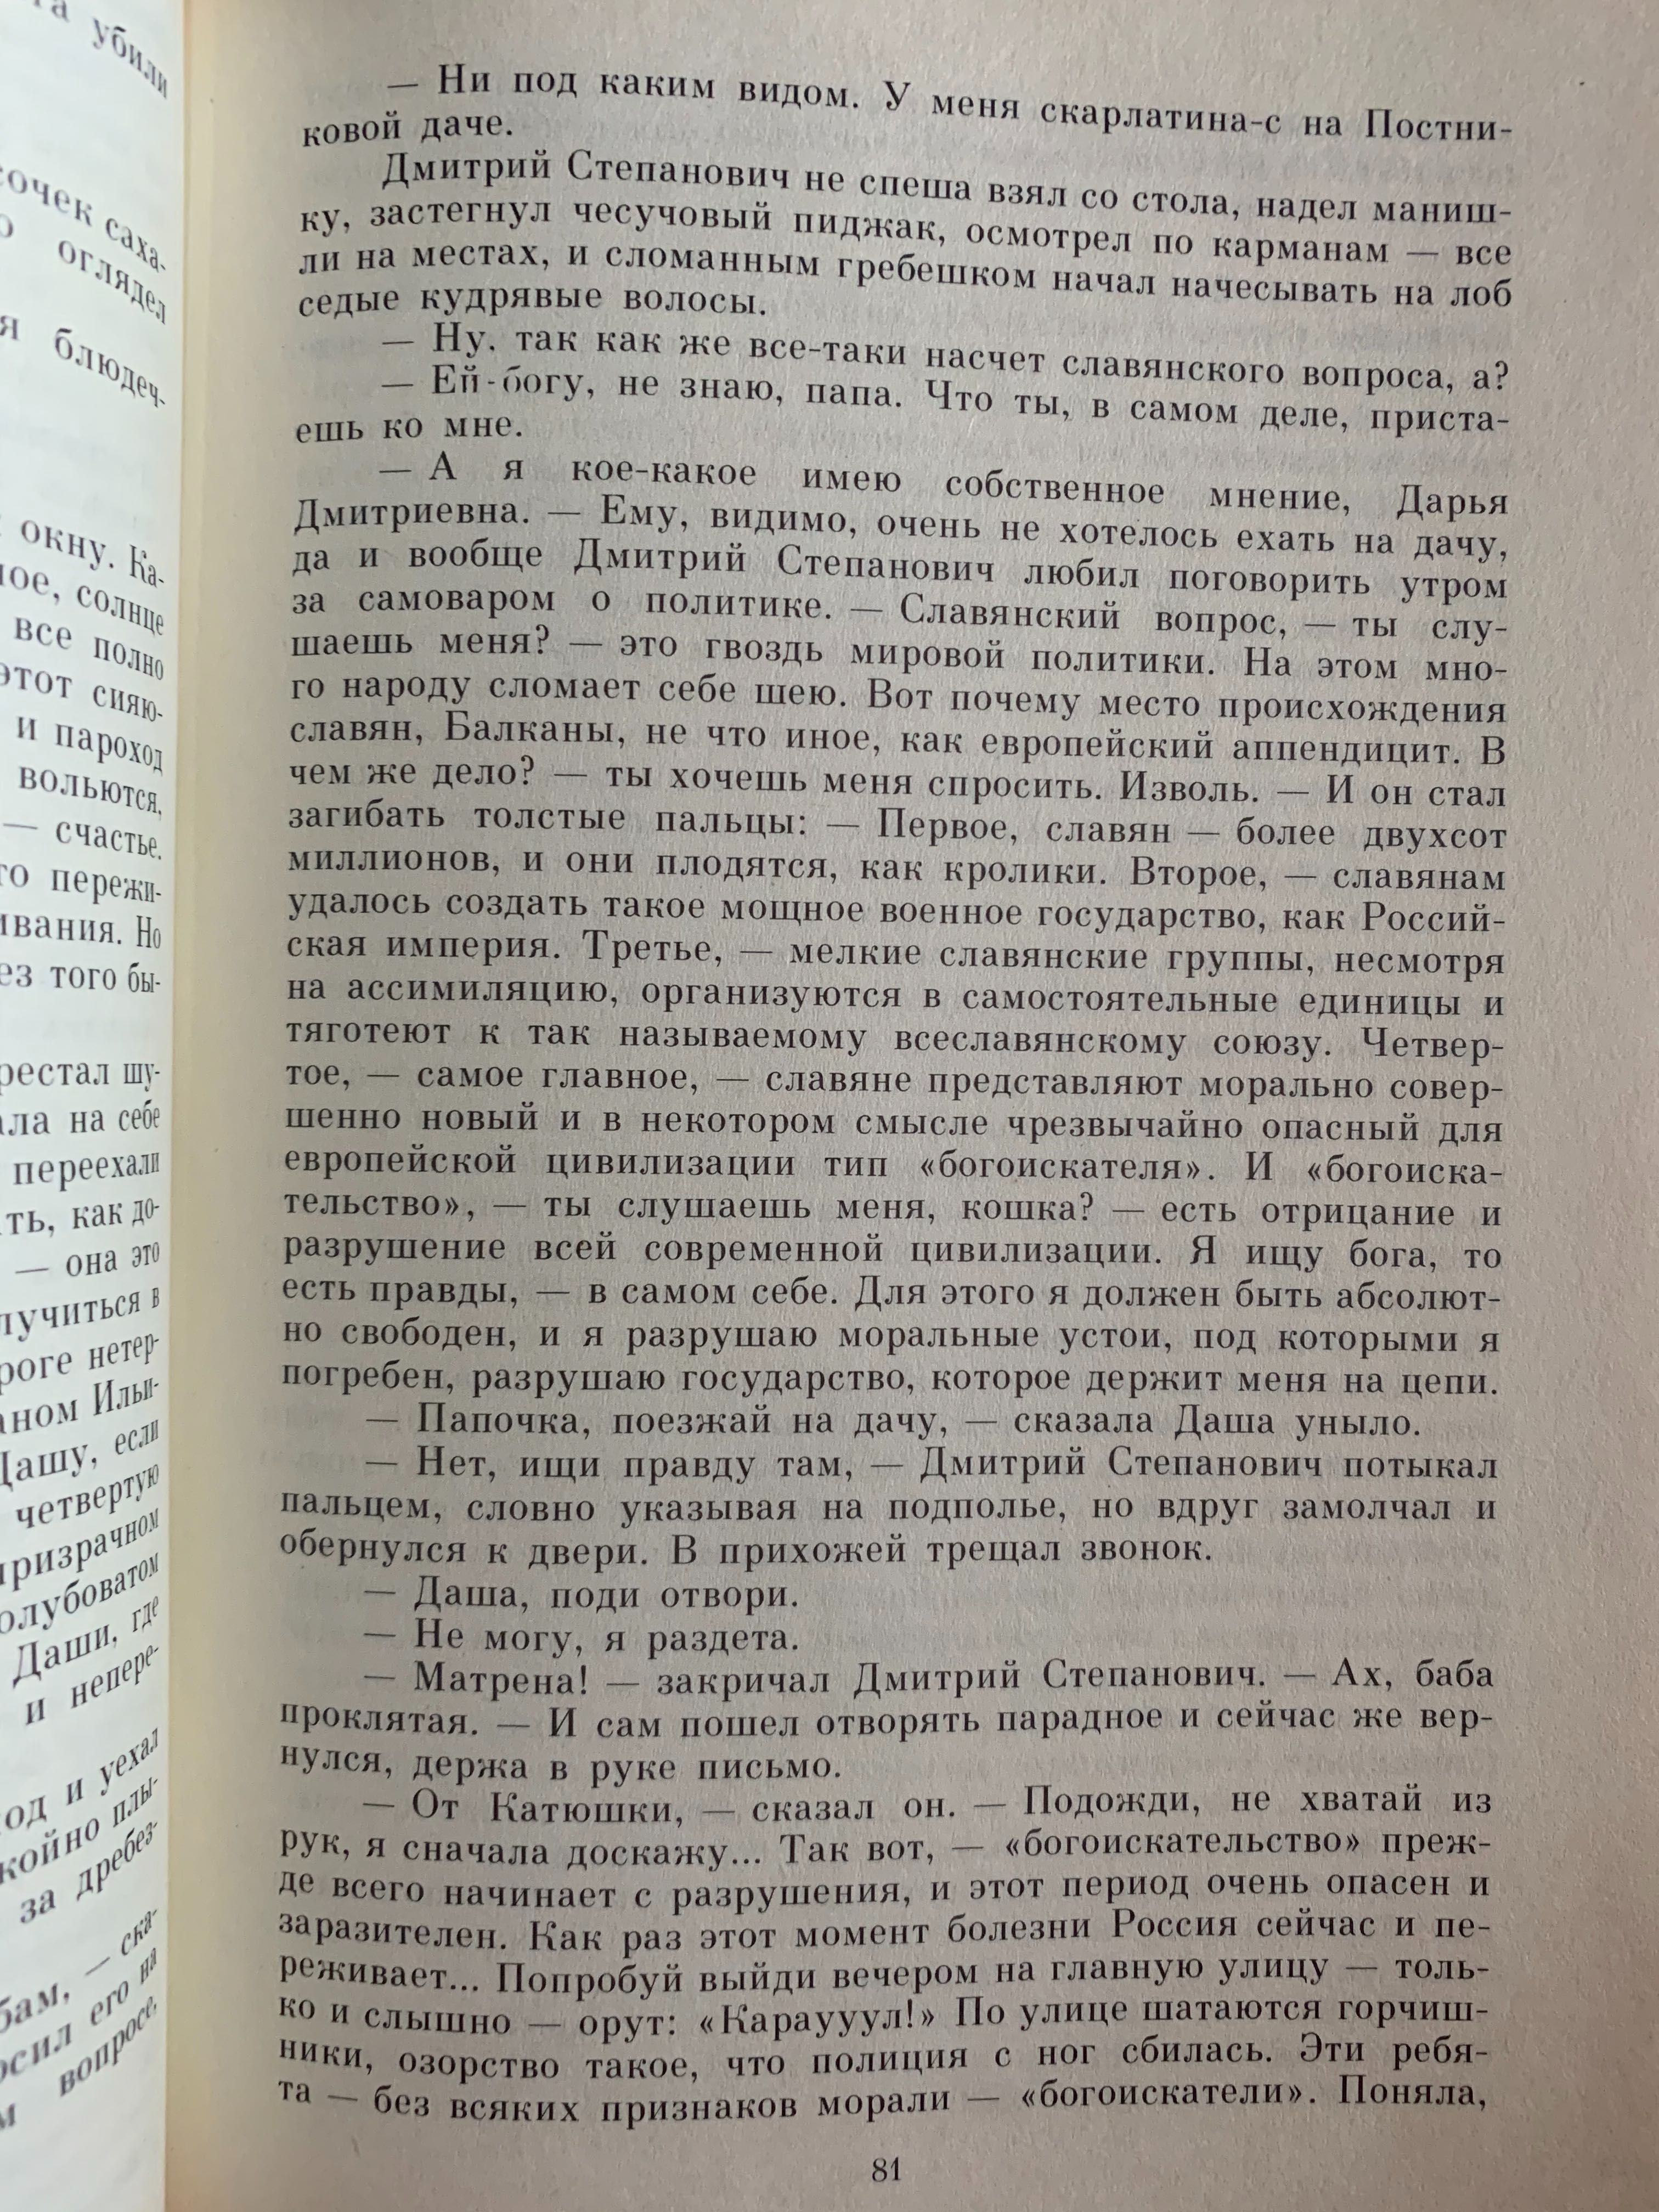 А.Н.Толстой «Хождение по мукам» Трилогия М.1990